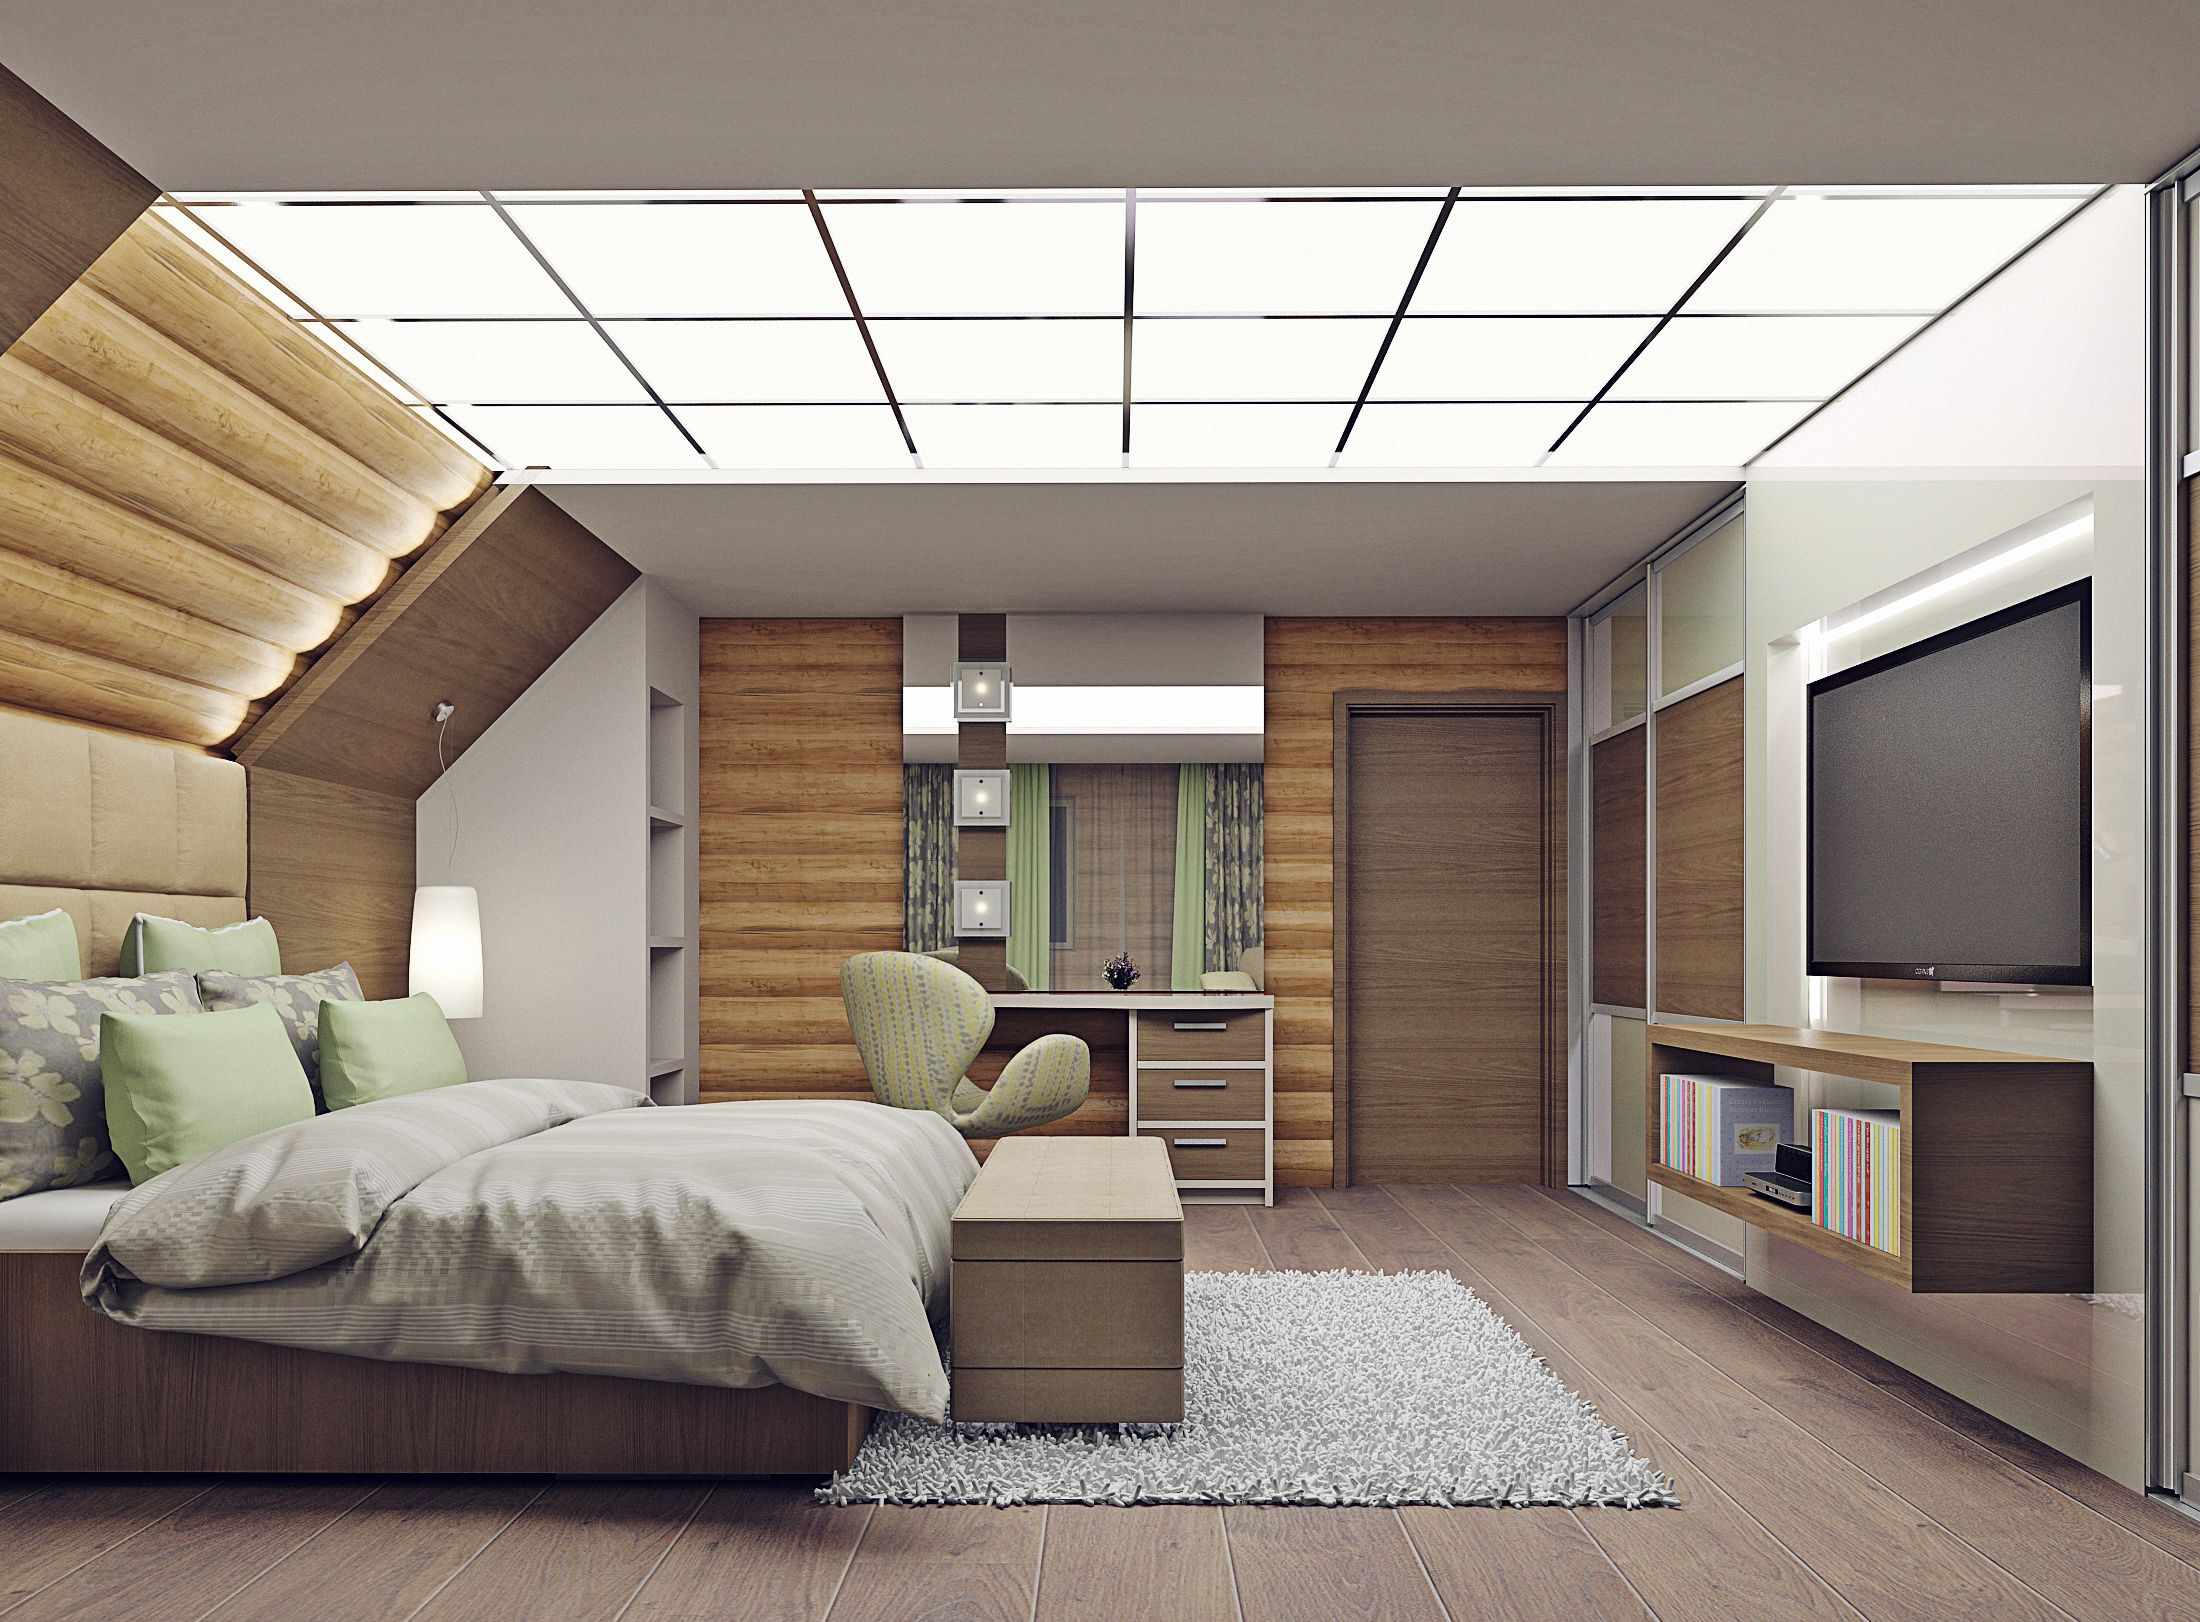 גרסה של עיצוב בהיר של חדר שינה בעליית הגג